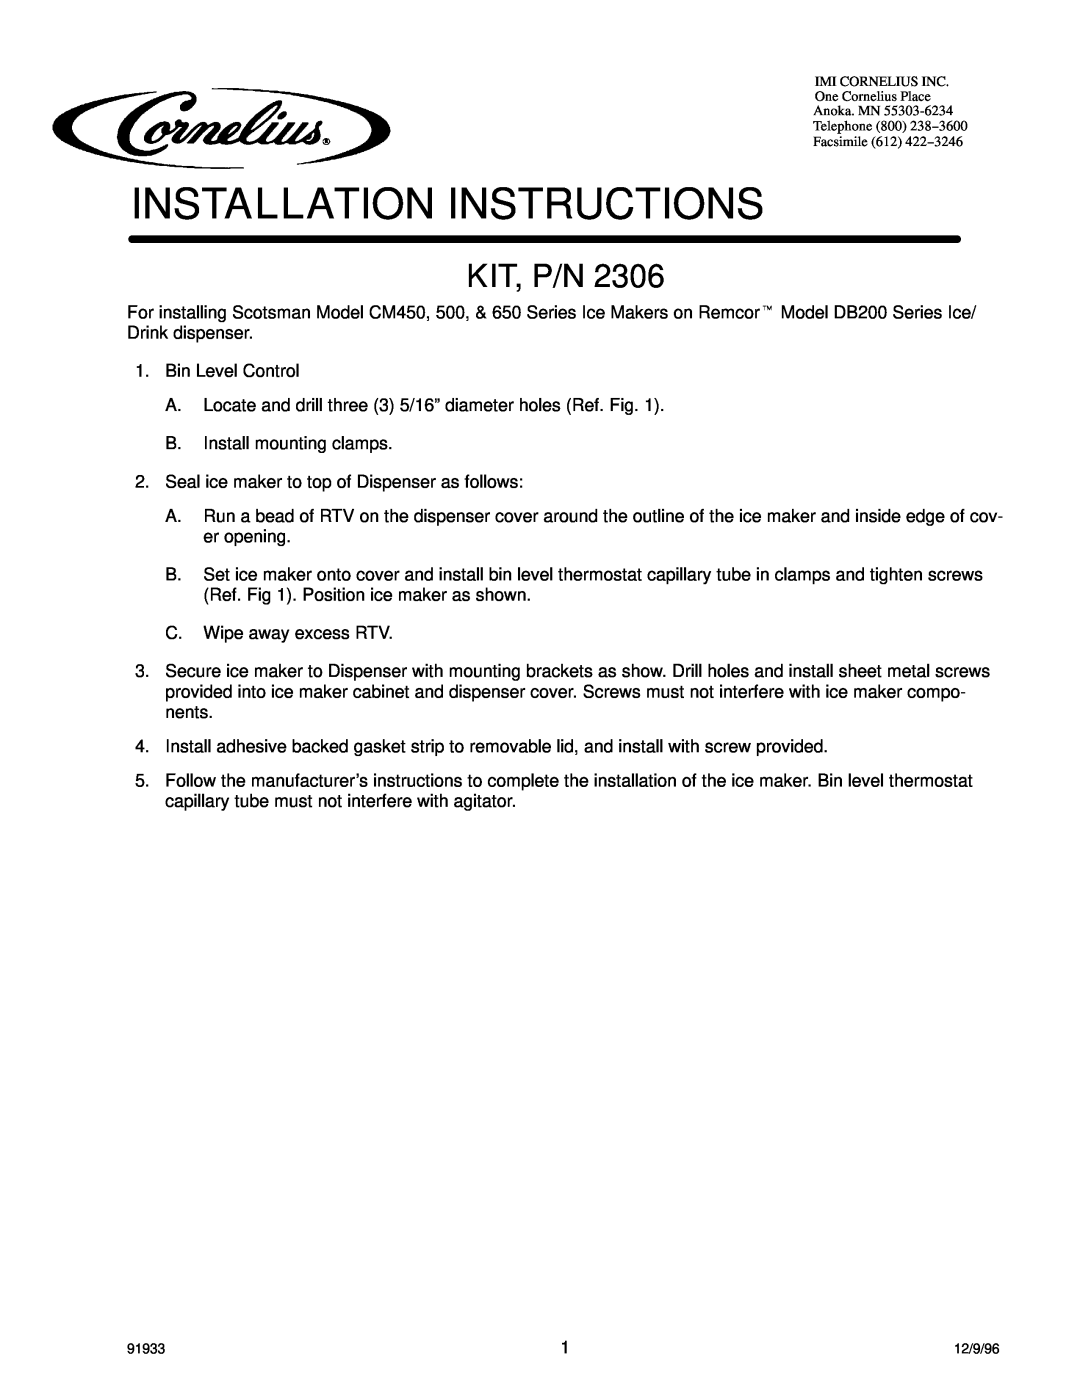 Cornelius DB200, CM450, CM650, CM500 installation instructions Installation Instructions, Kit, P/N 